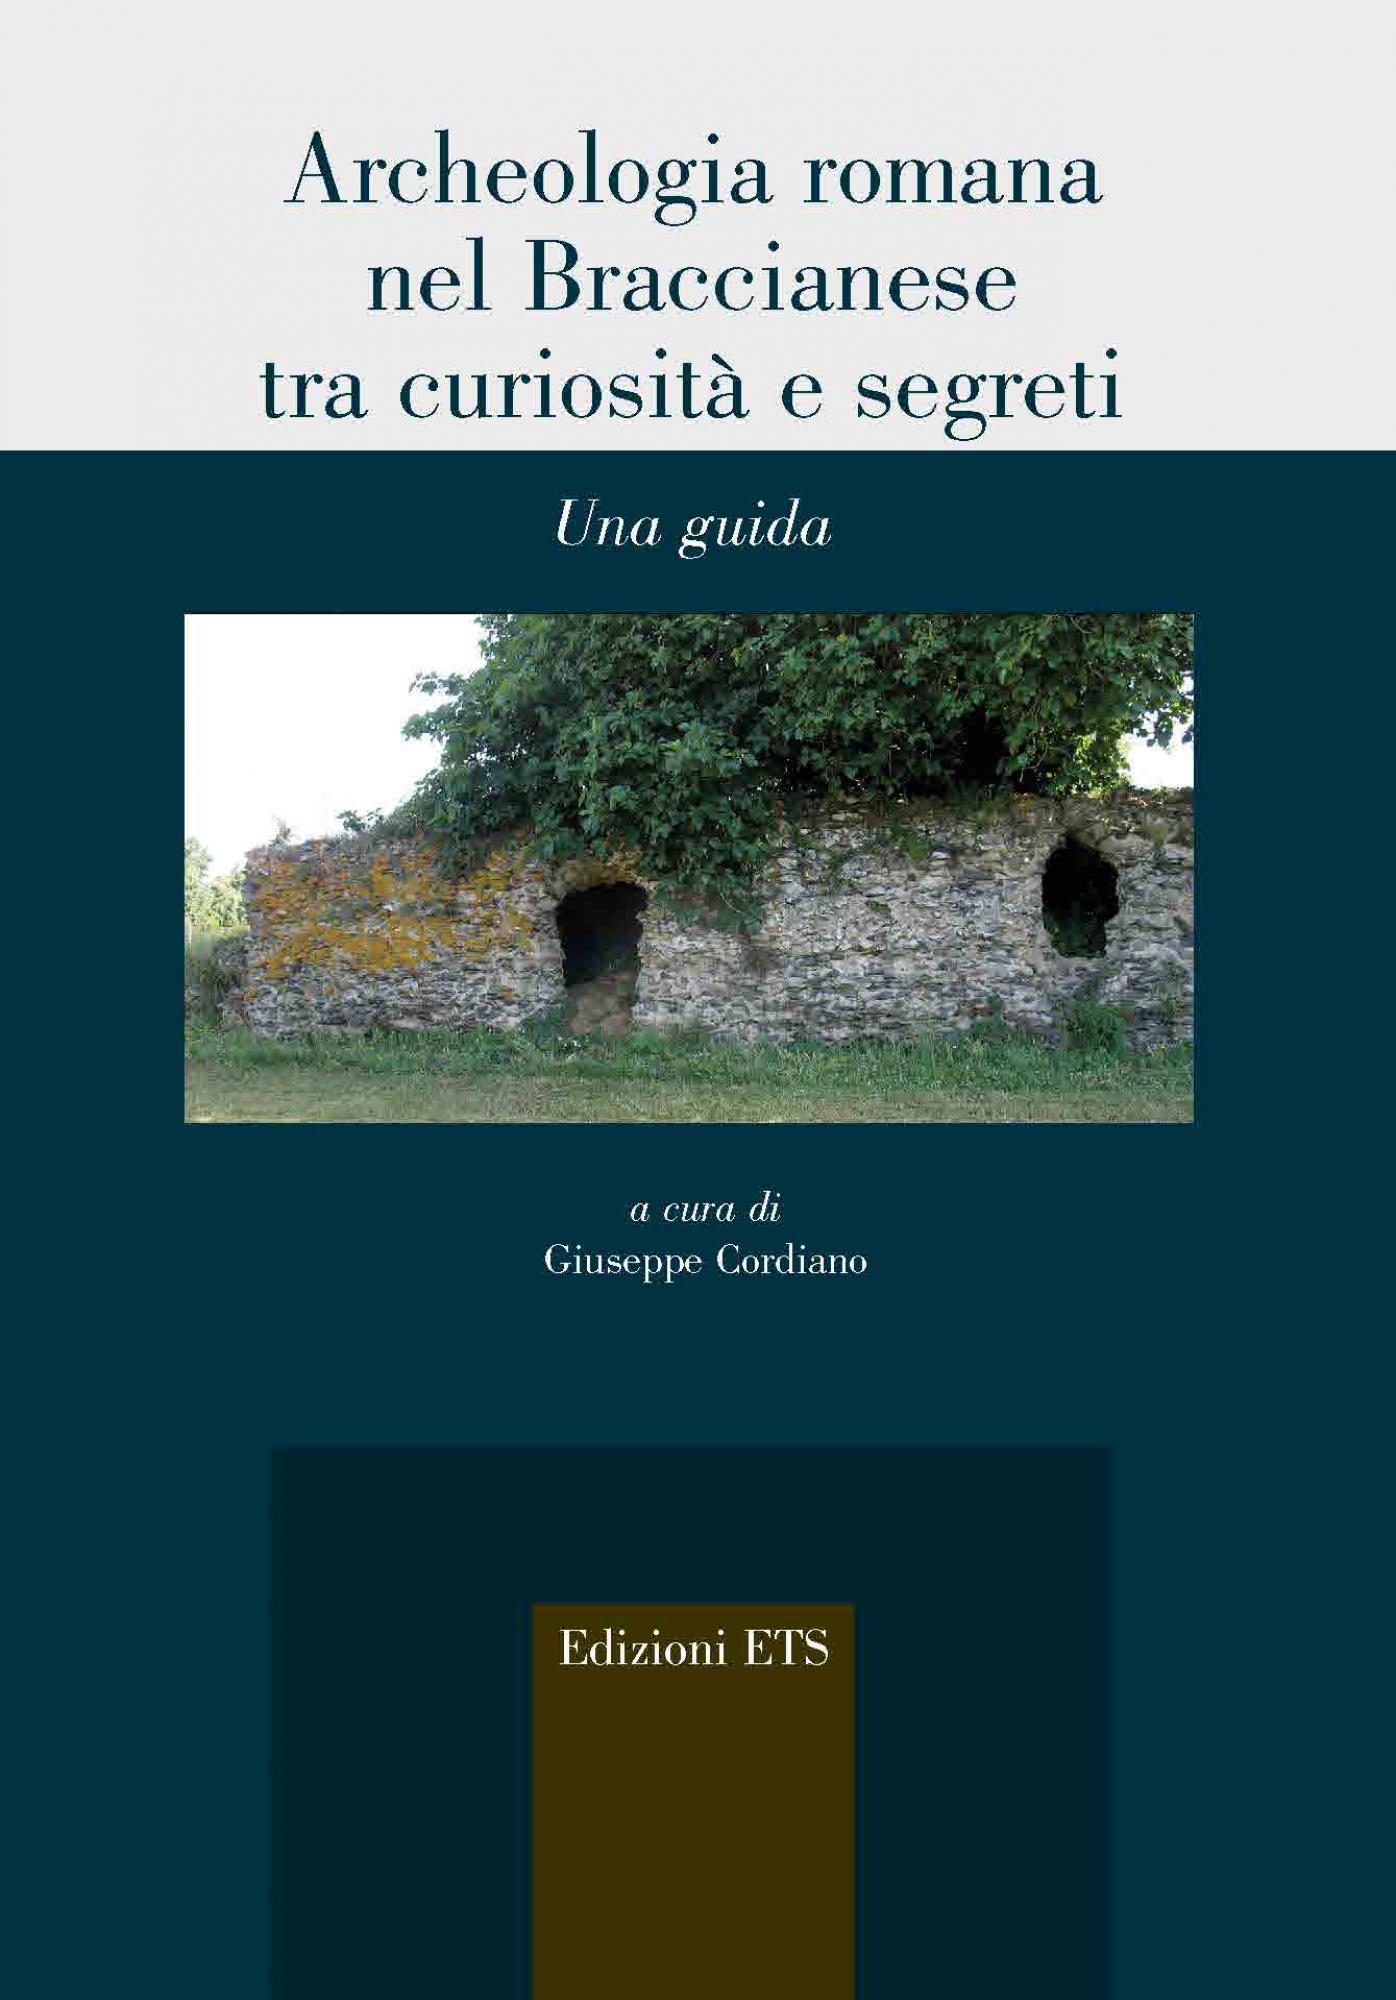 <br />Archeologia romana nel Braccianese tra curiosità e segreti.Una guida